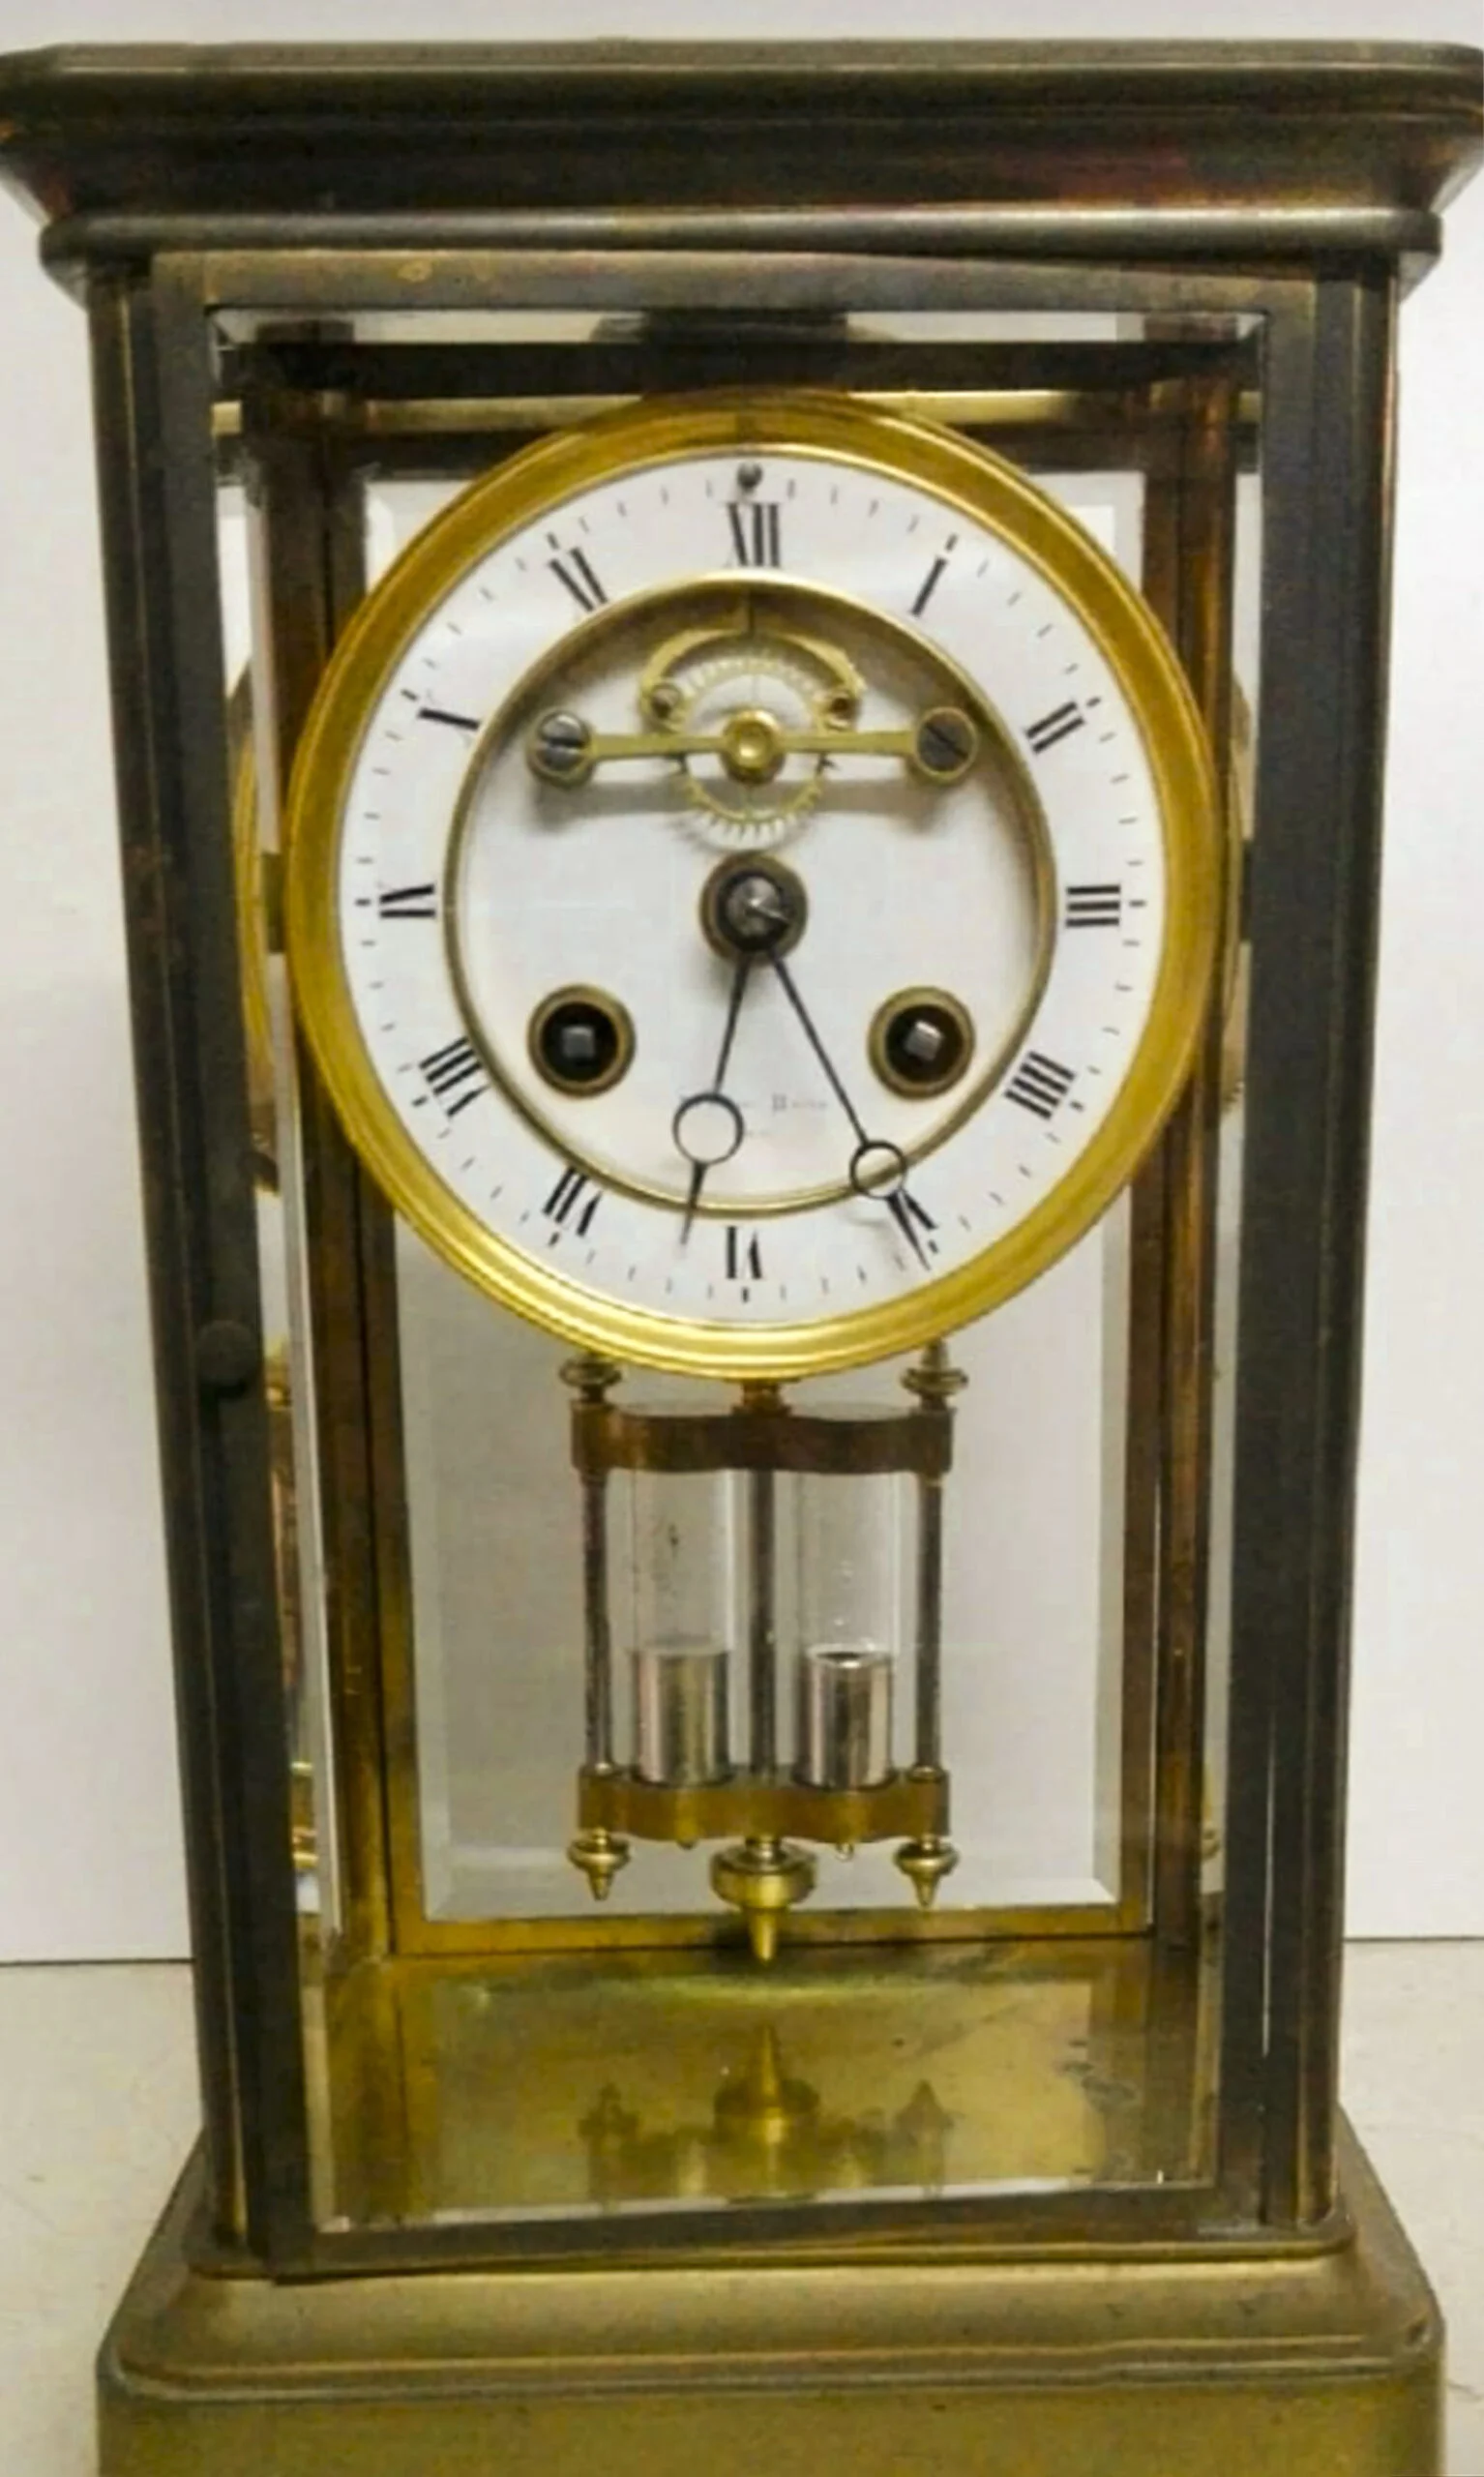 Reloj restaurado – Joyería Gaspar